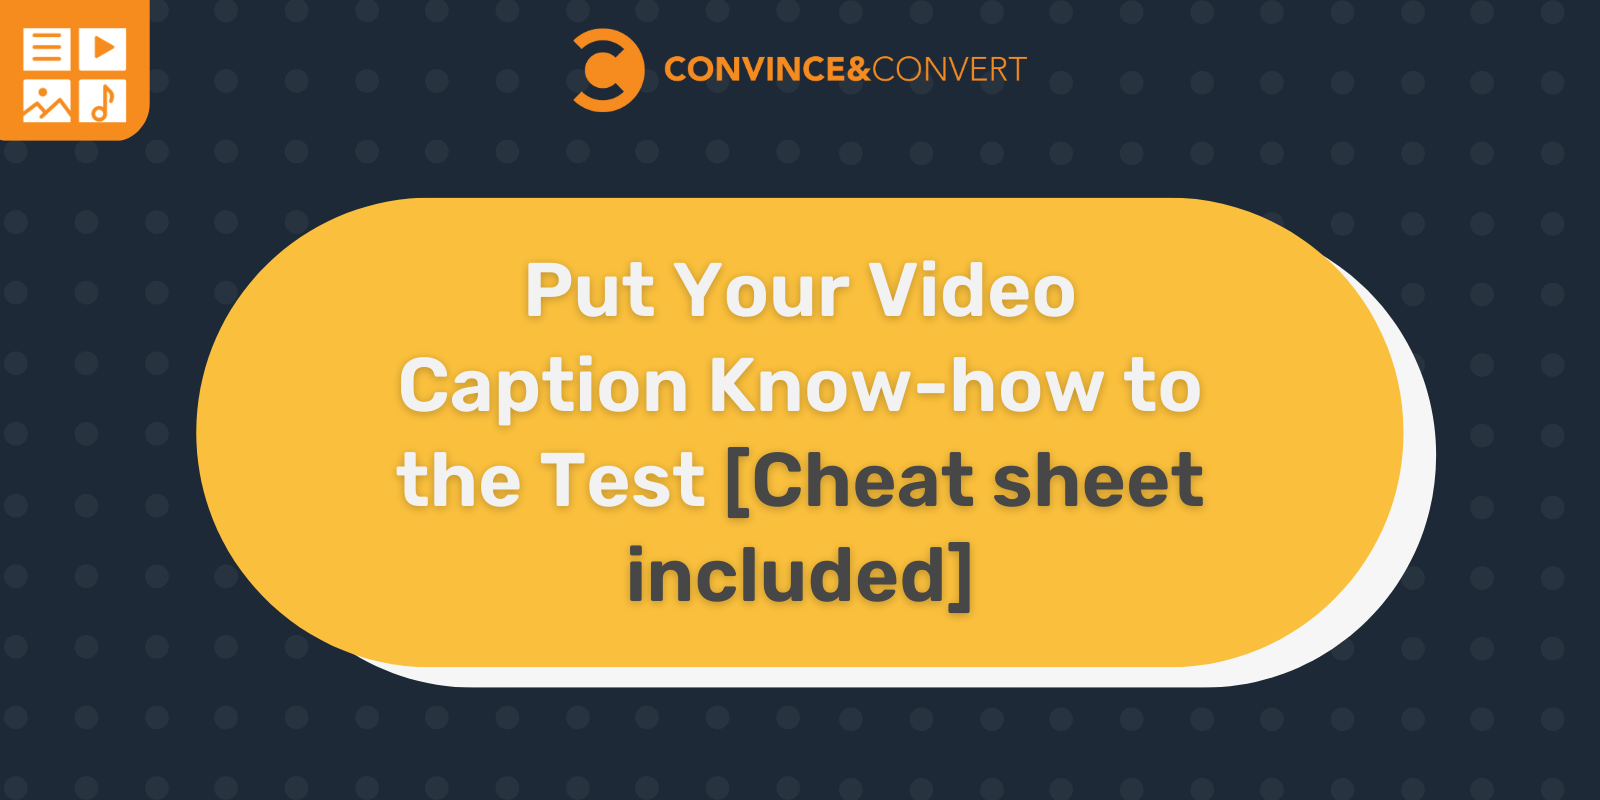 Metti alla prova il tuo know-how sui sottotitoli video [Cheat sheet included]